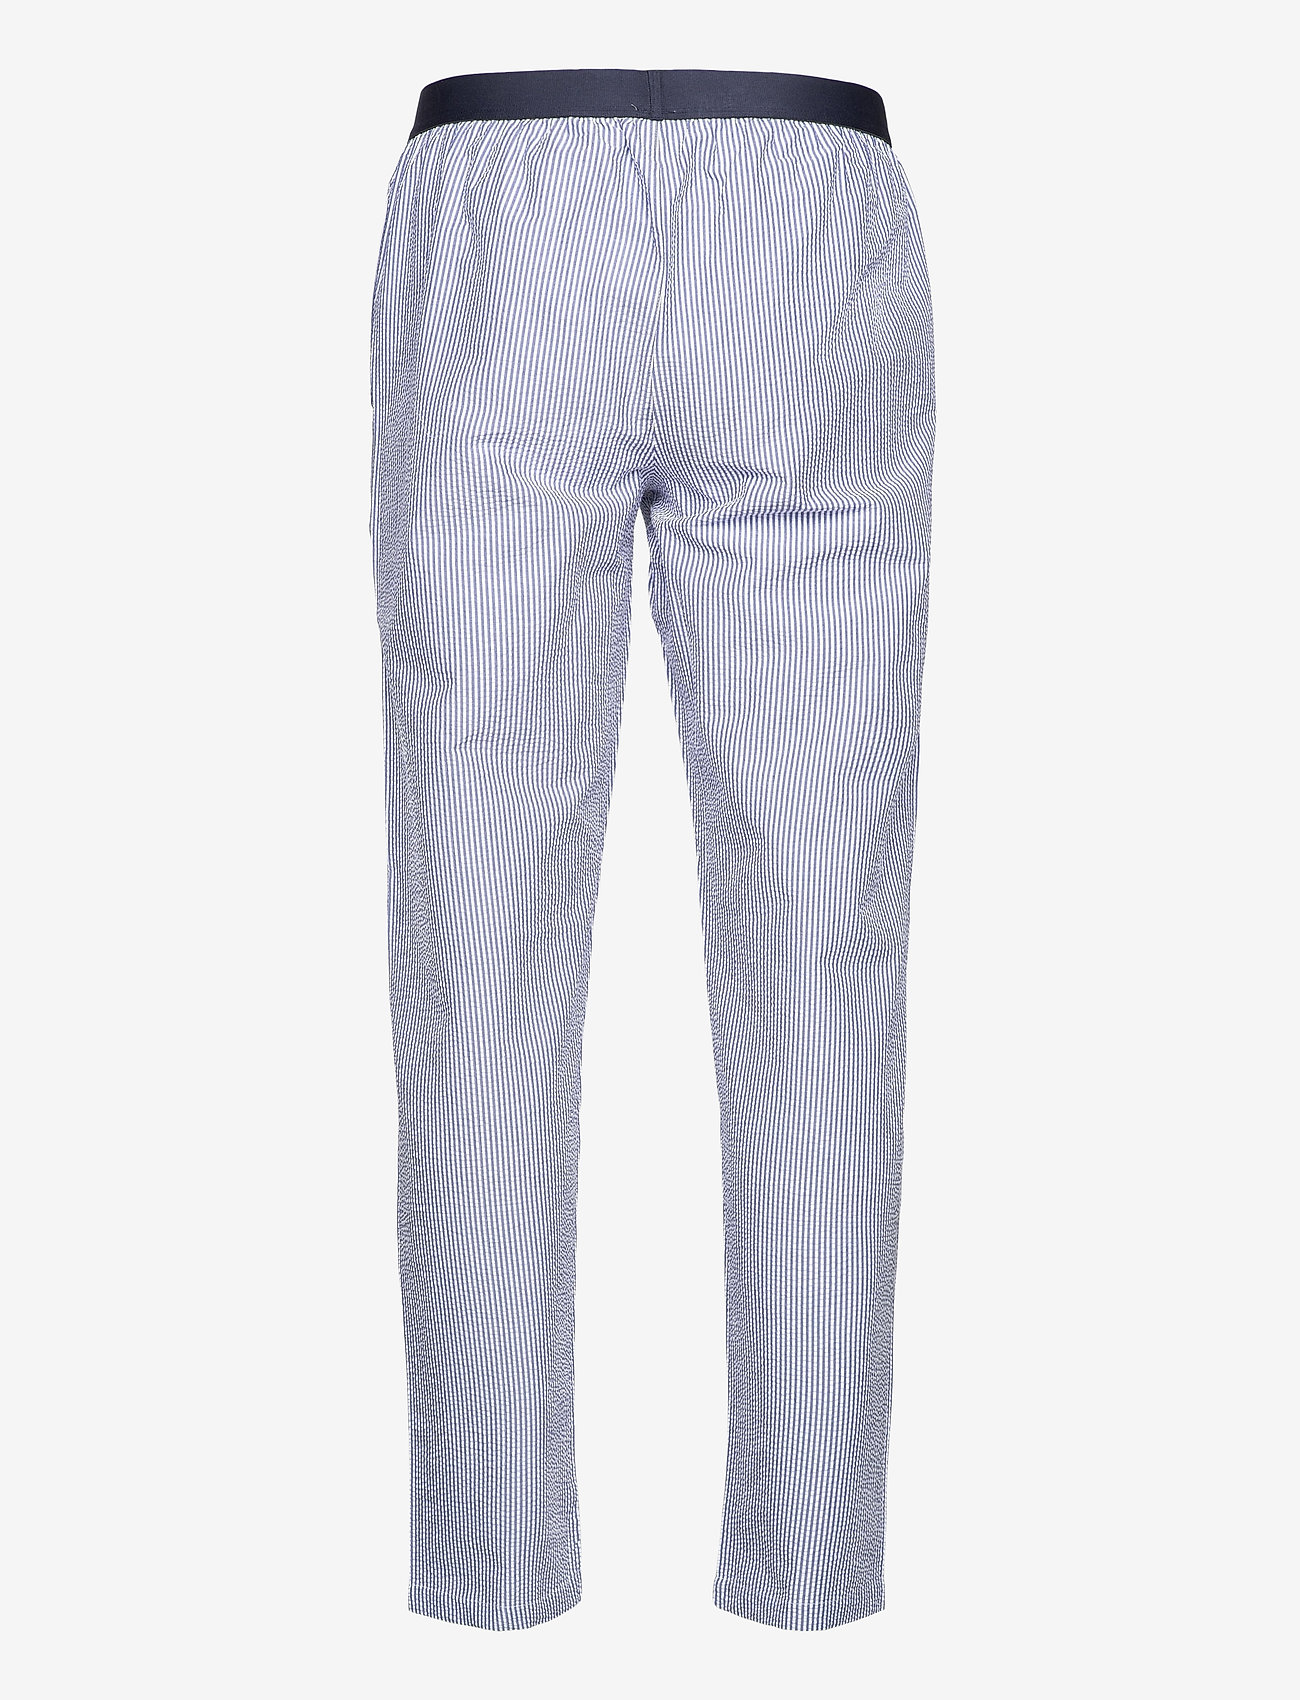 JBS of Denmark - JBS of DK seersucker pant - nightwear - multi - 1